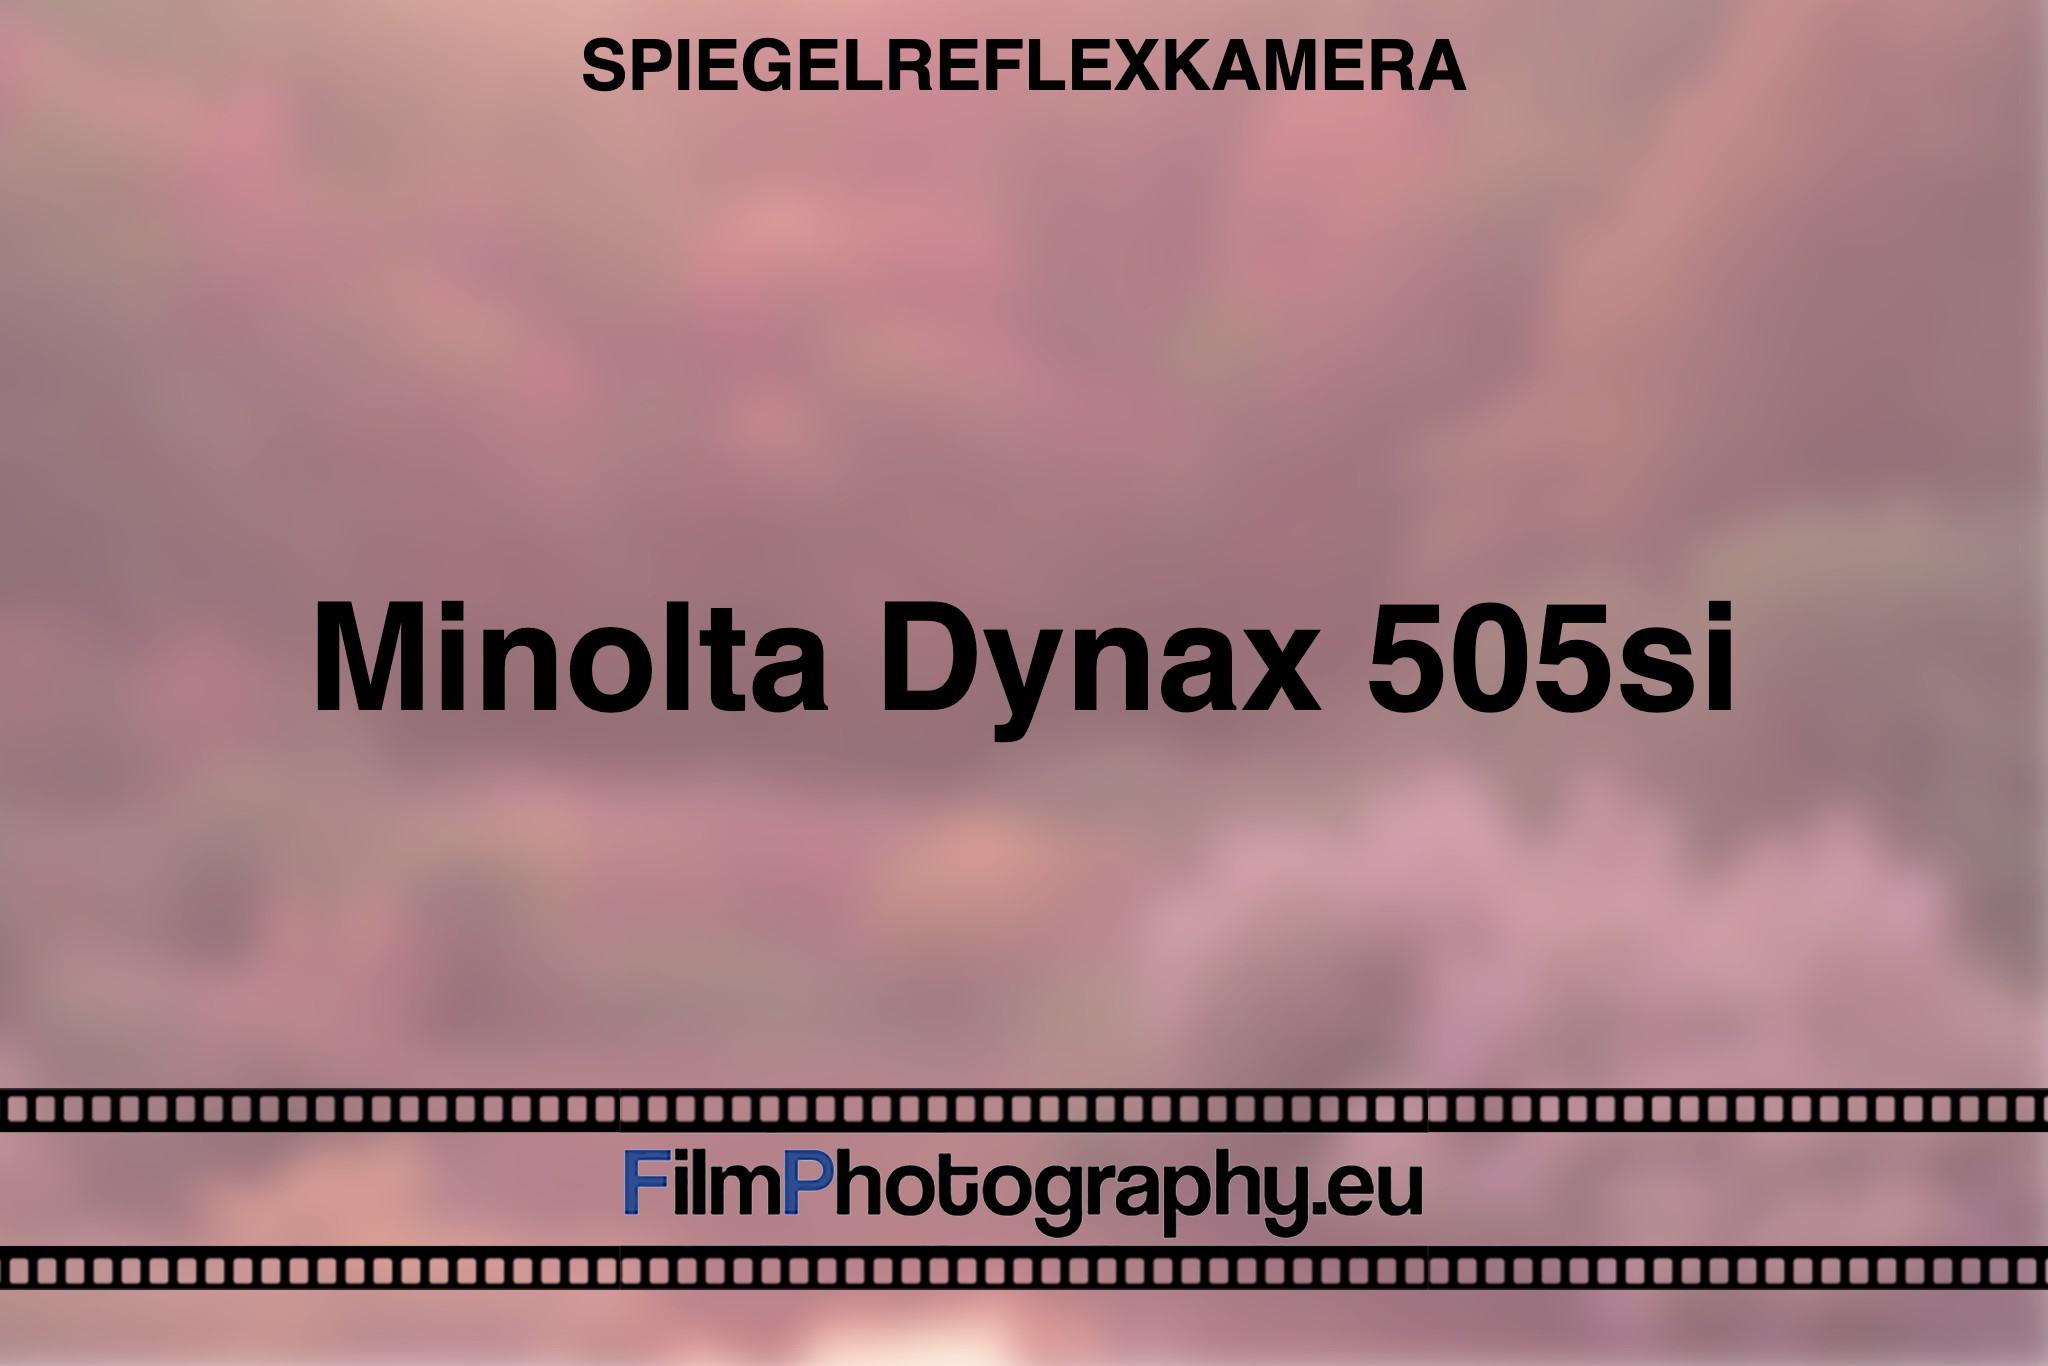 minolta-dynax-505si-spiegelreflexkamera-bnv